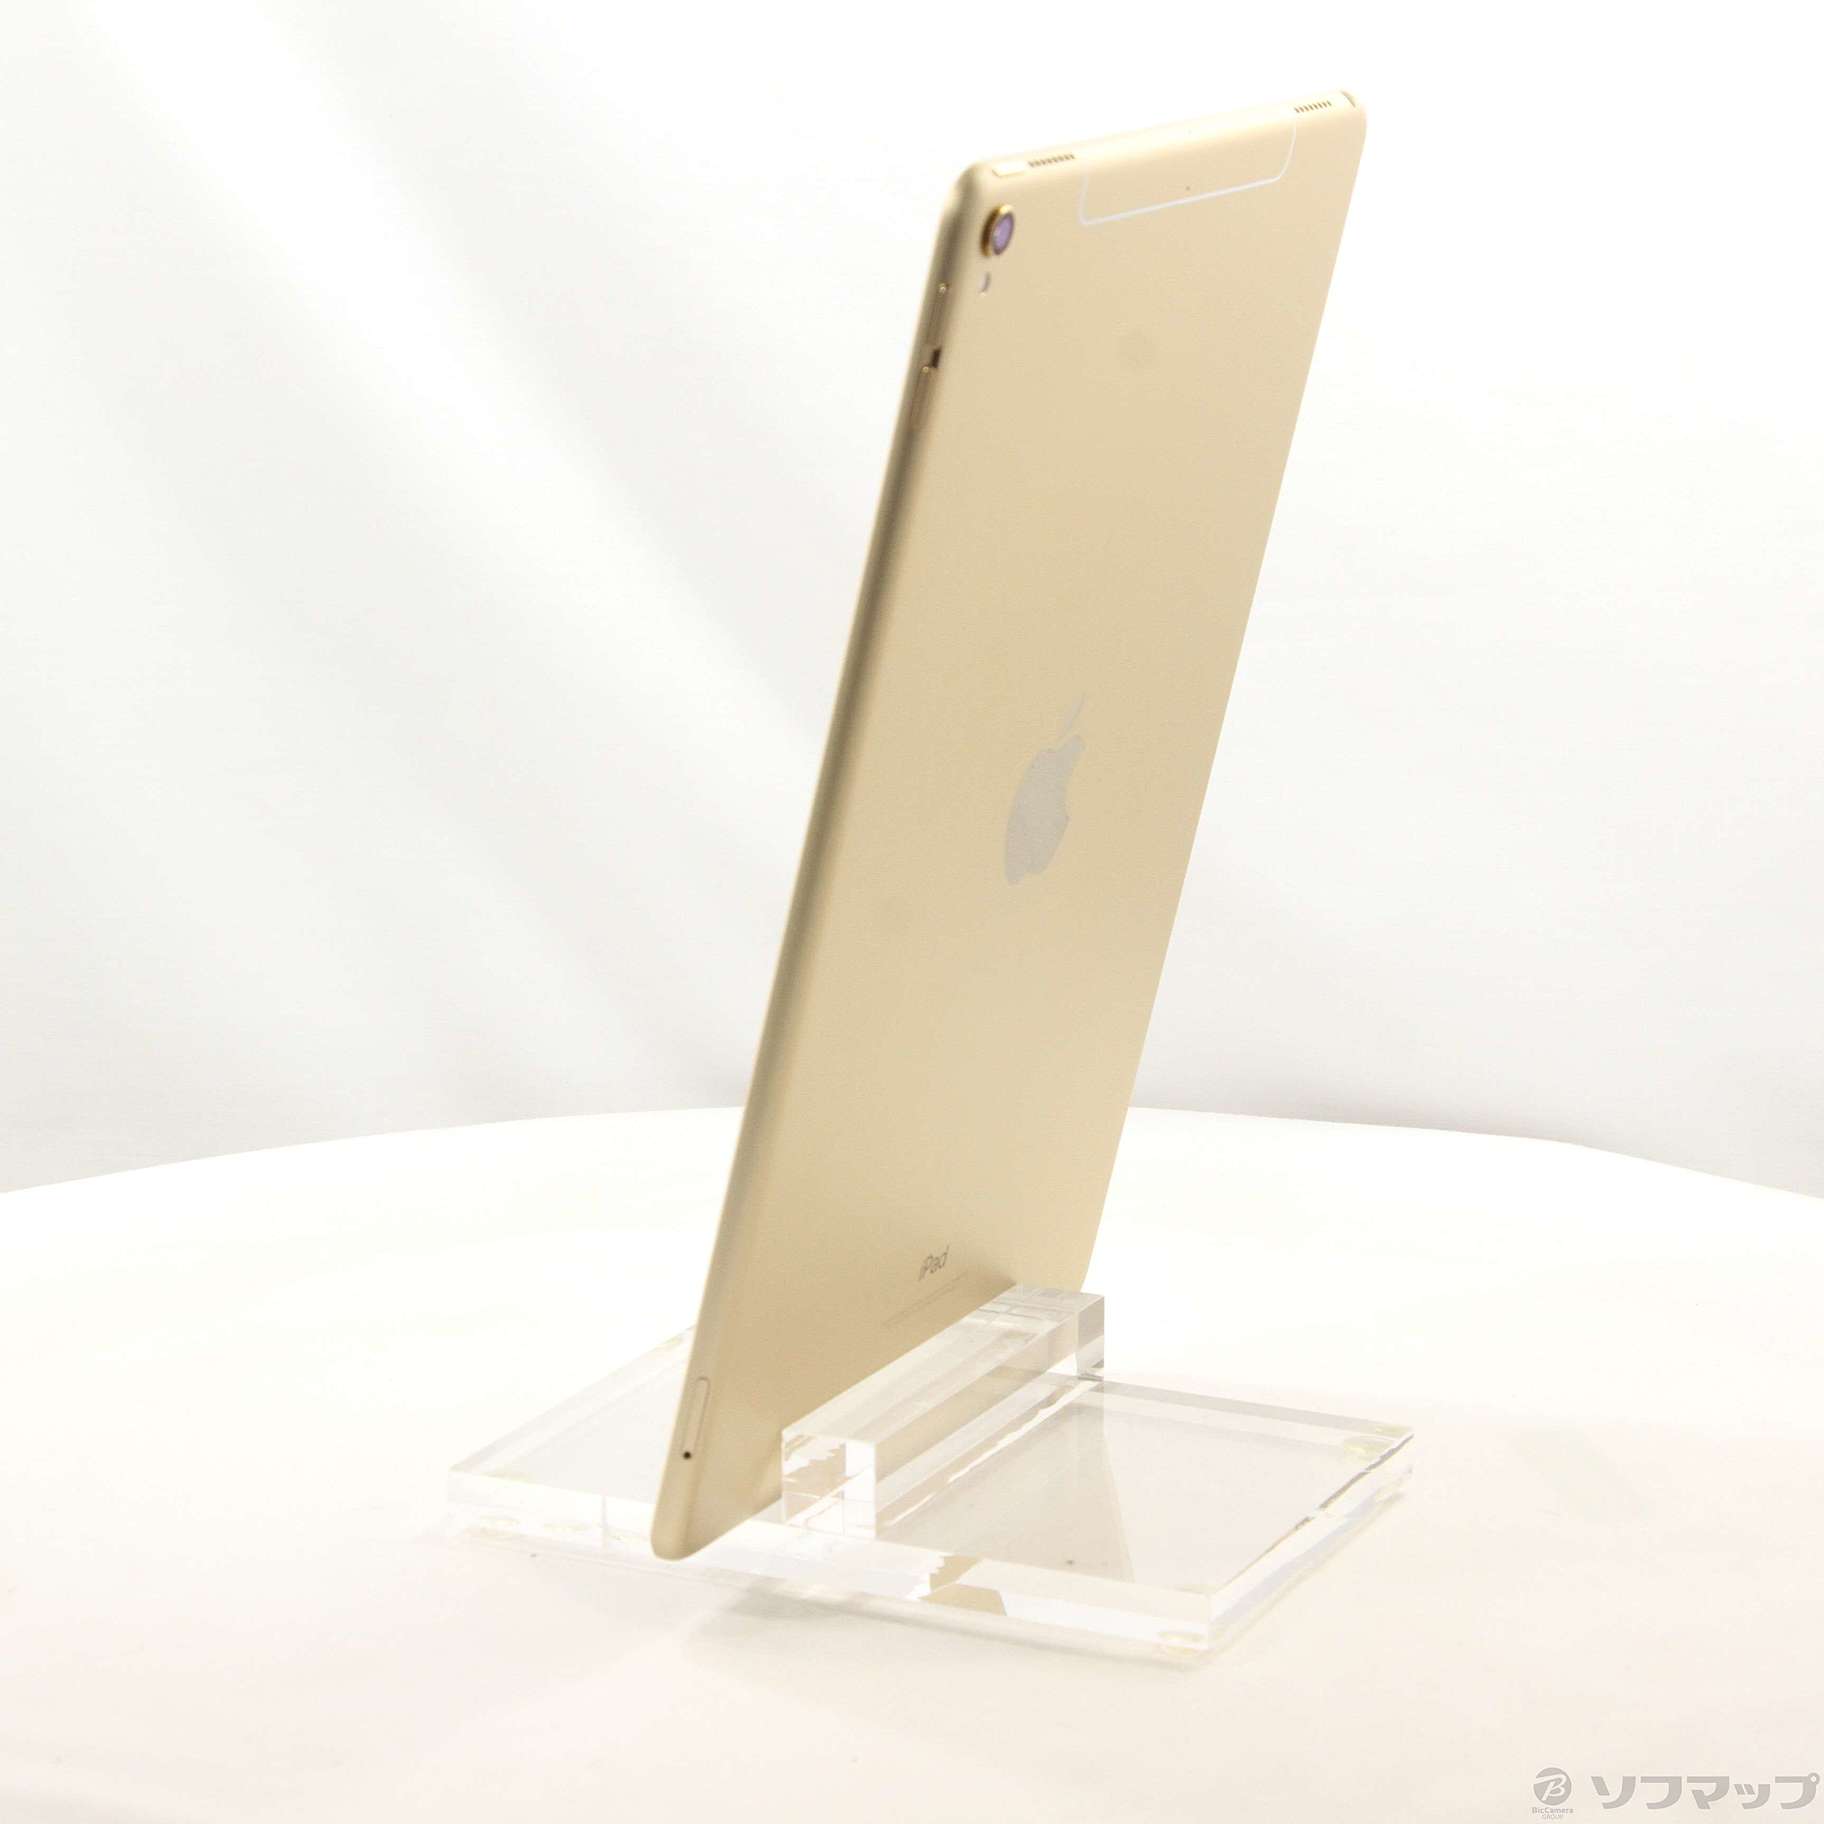 【直接買】CK664 SIMフリー iPad Pro 10.5インチ Wi-Fi+Cellular 64GB シルバー iPad本体